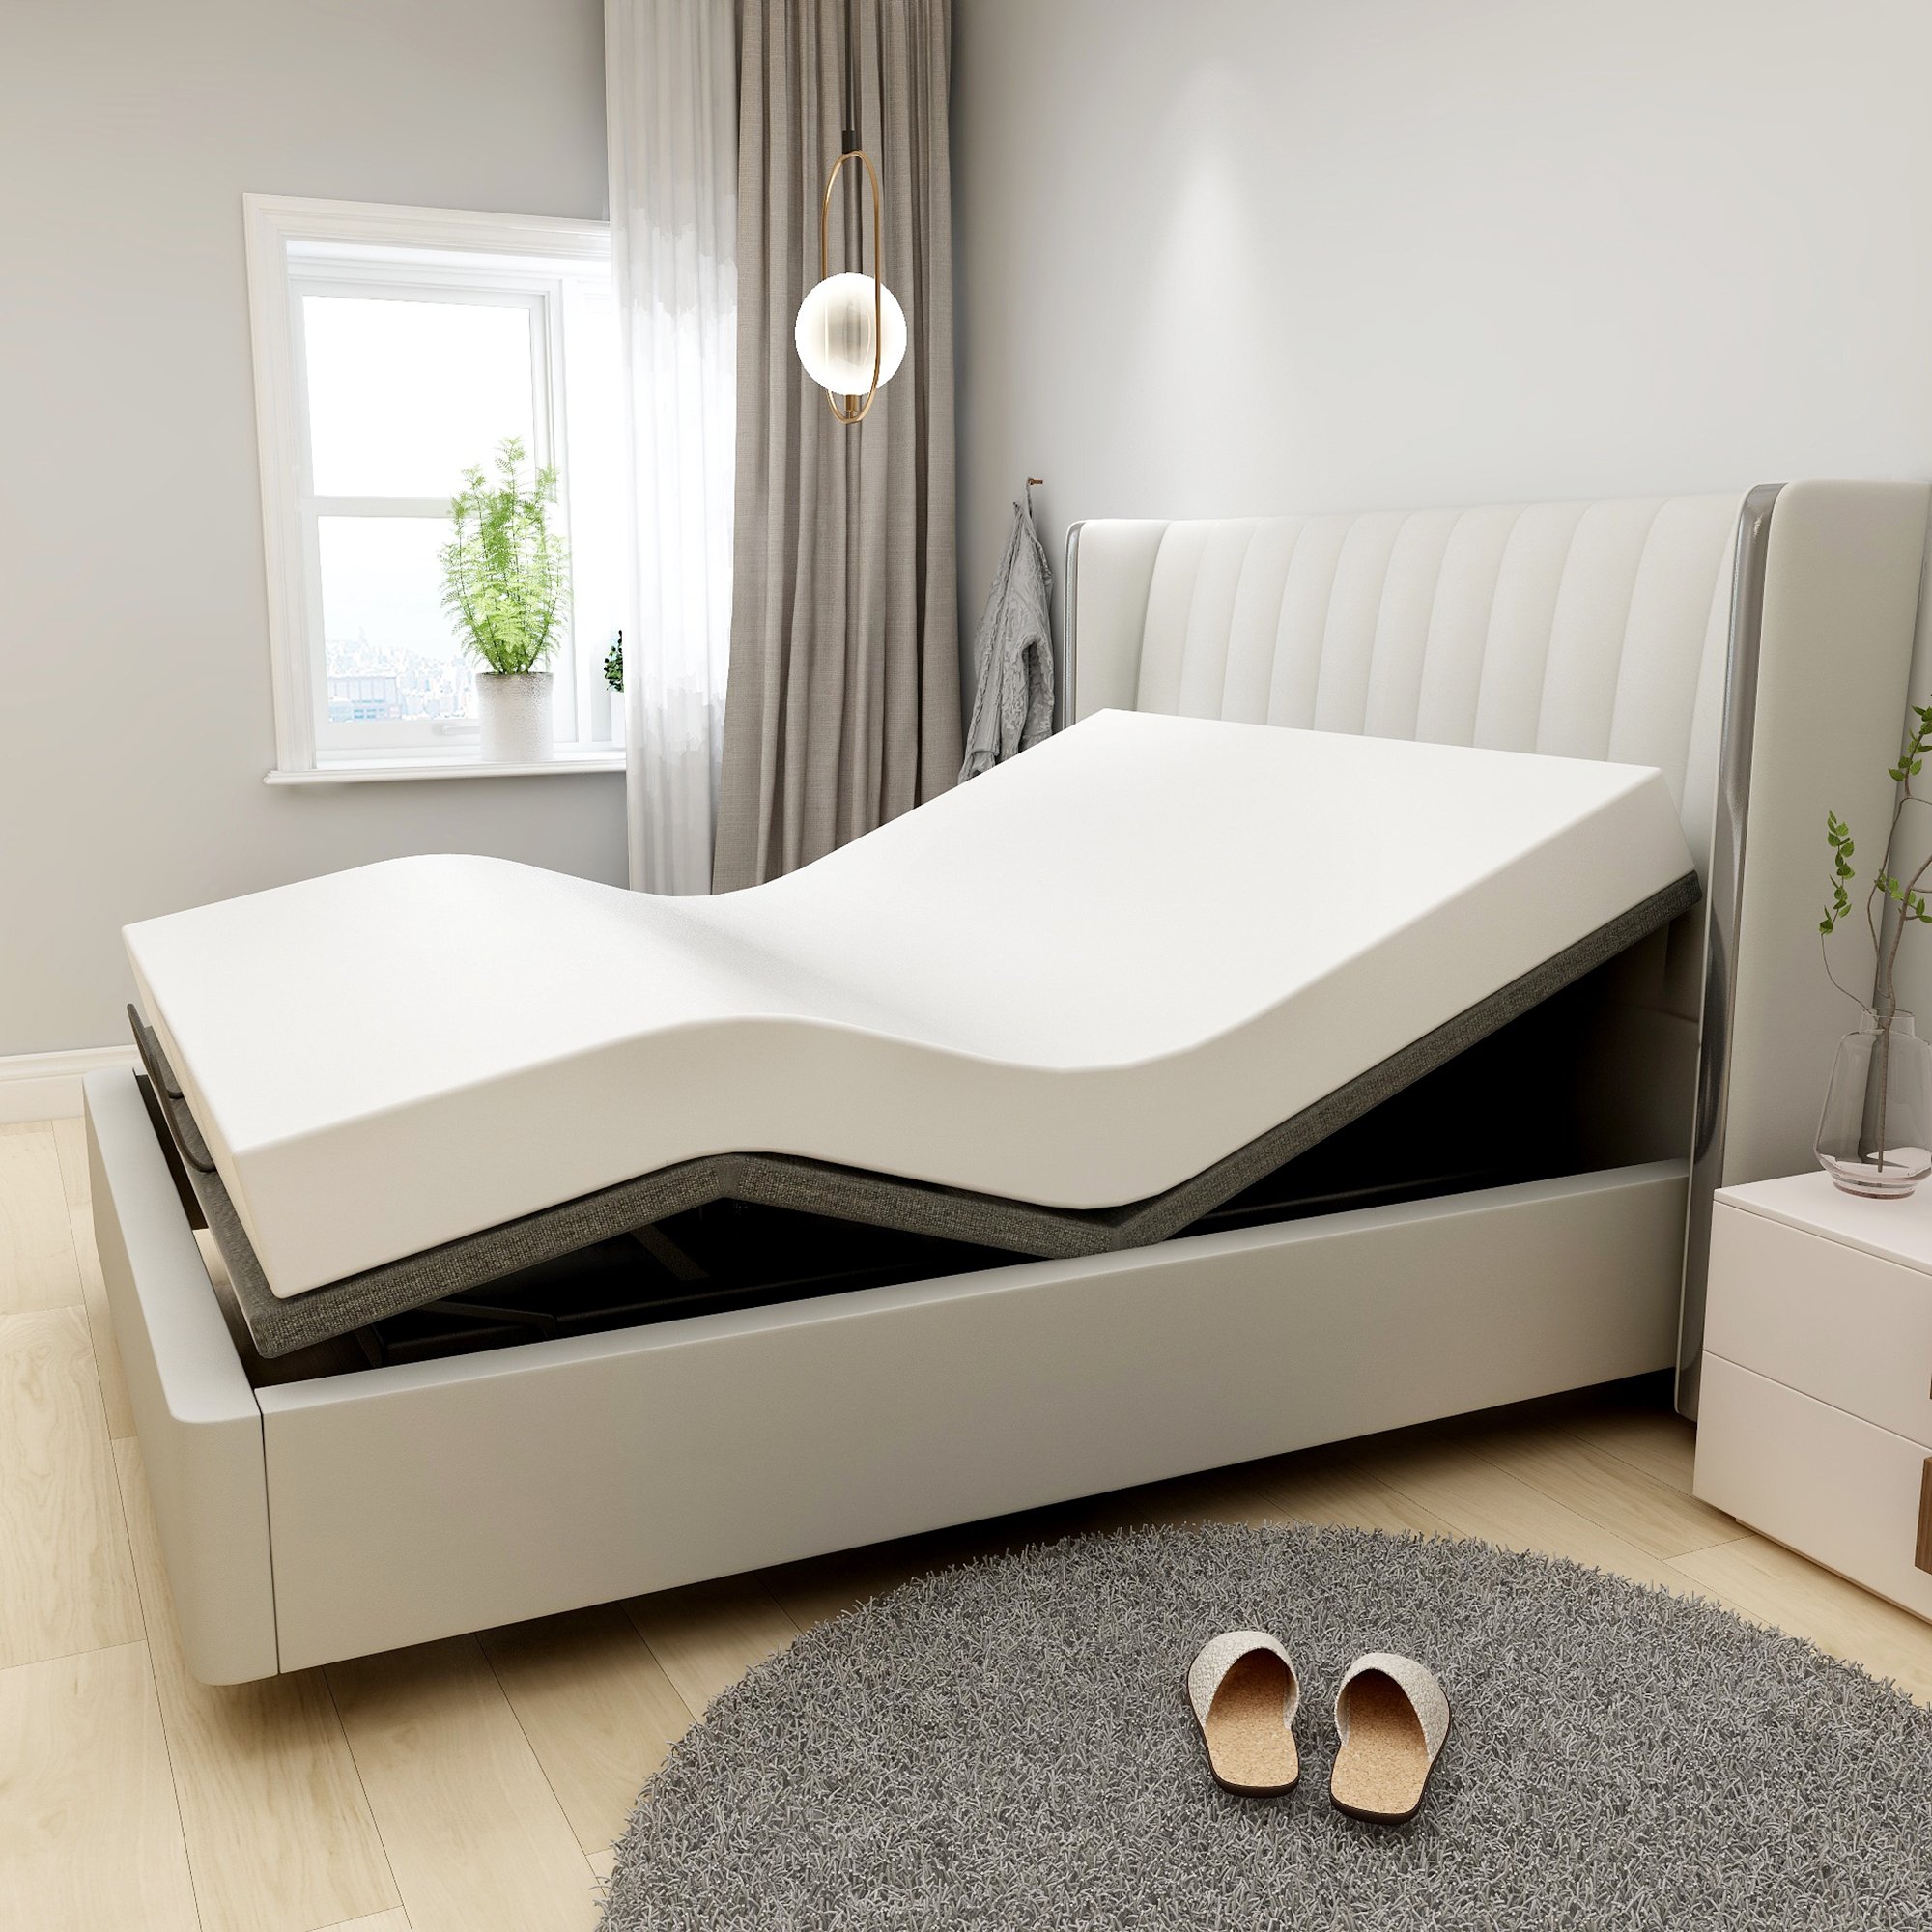 SMIAOER Adjustable Bed Base Frame Smart Electric Beds Foundation